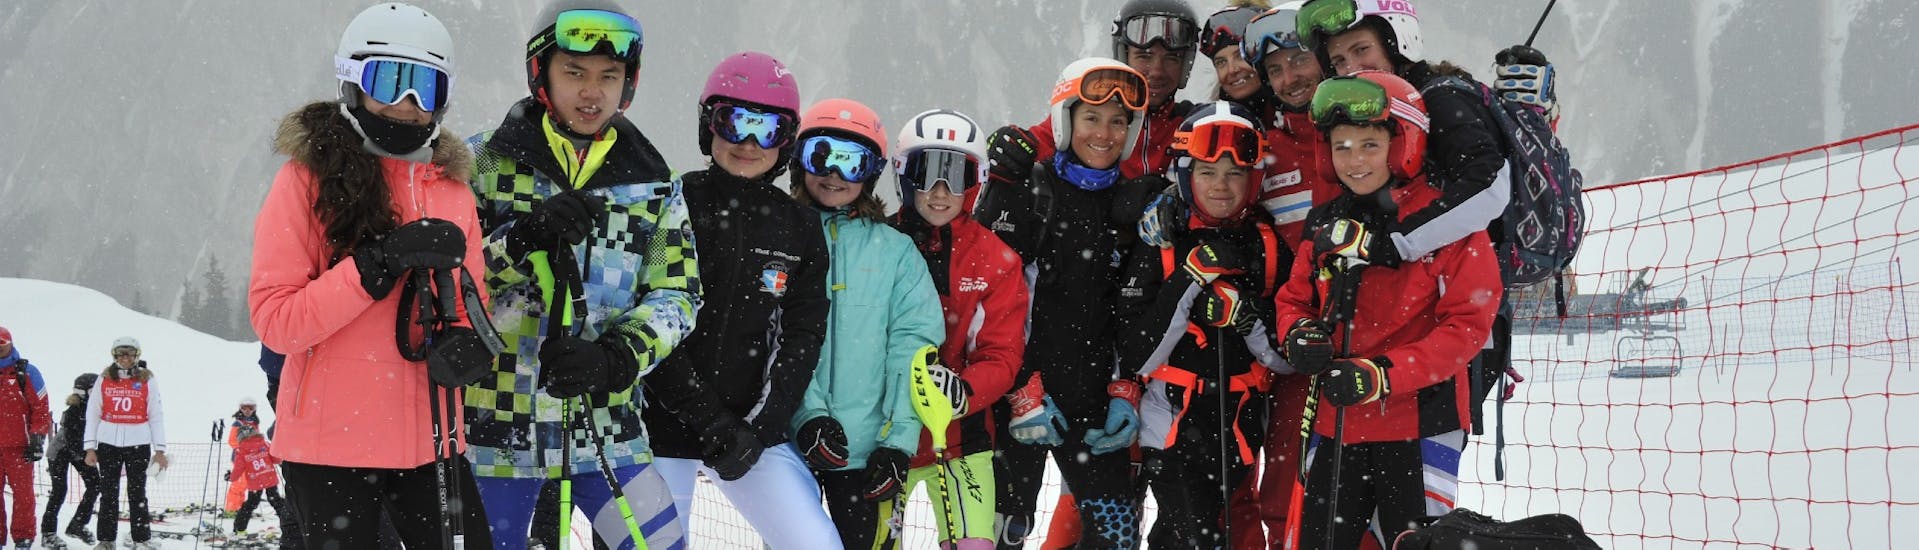 Eine Gruppe von Teenagern genoss ihren Skikurs für Jugendliche und Erwachsene für alle Levels mit dem ESF Courchevel 1650.